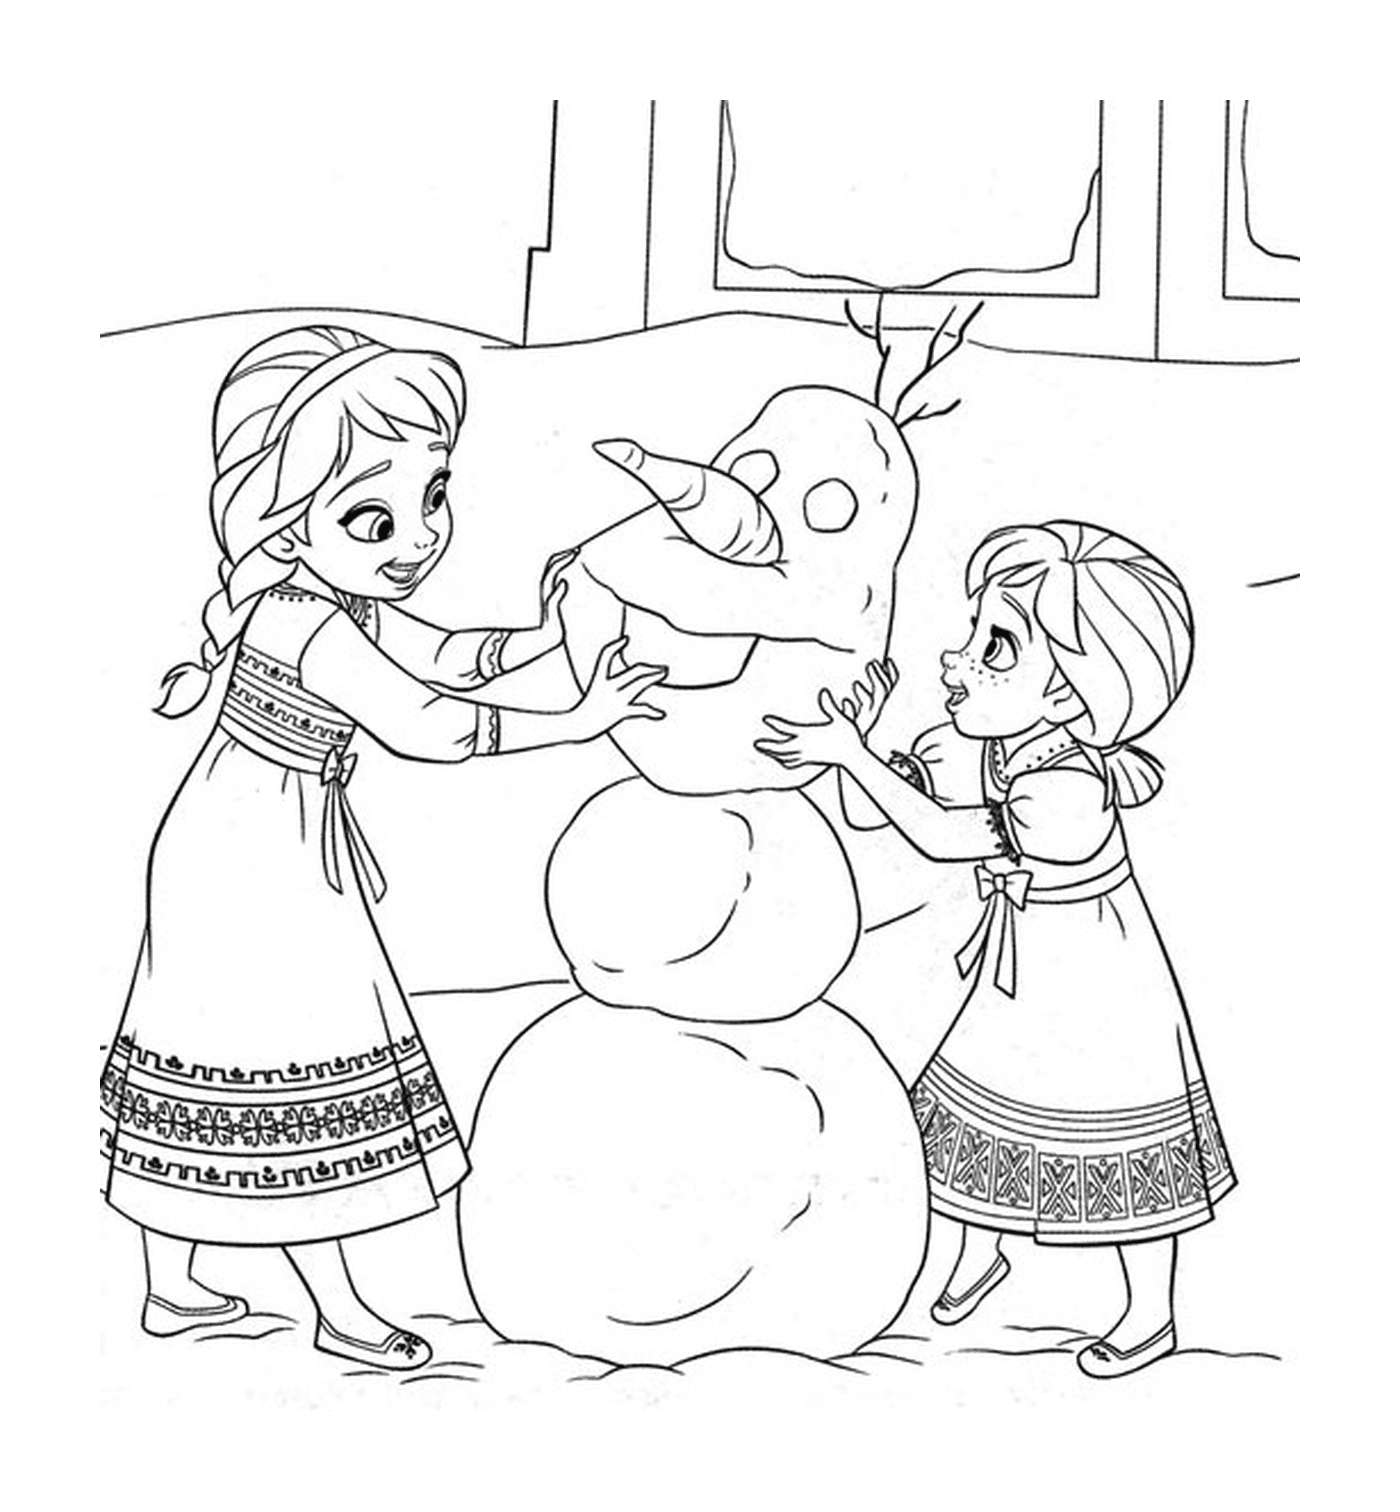  两个小女孩一起盖雪人雪人 